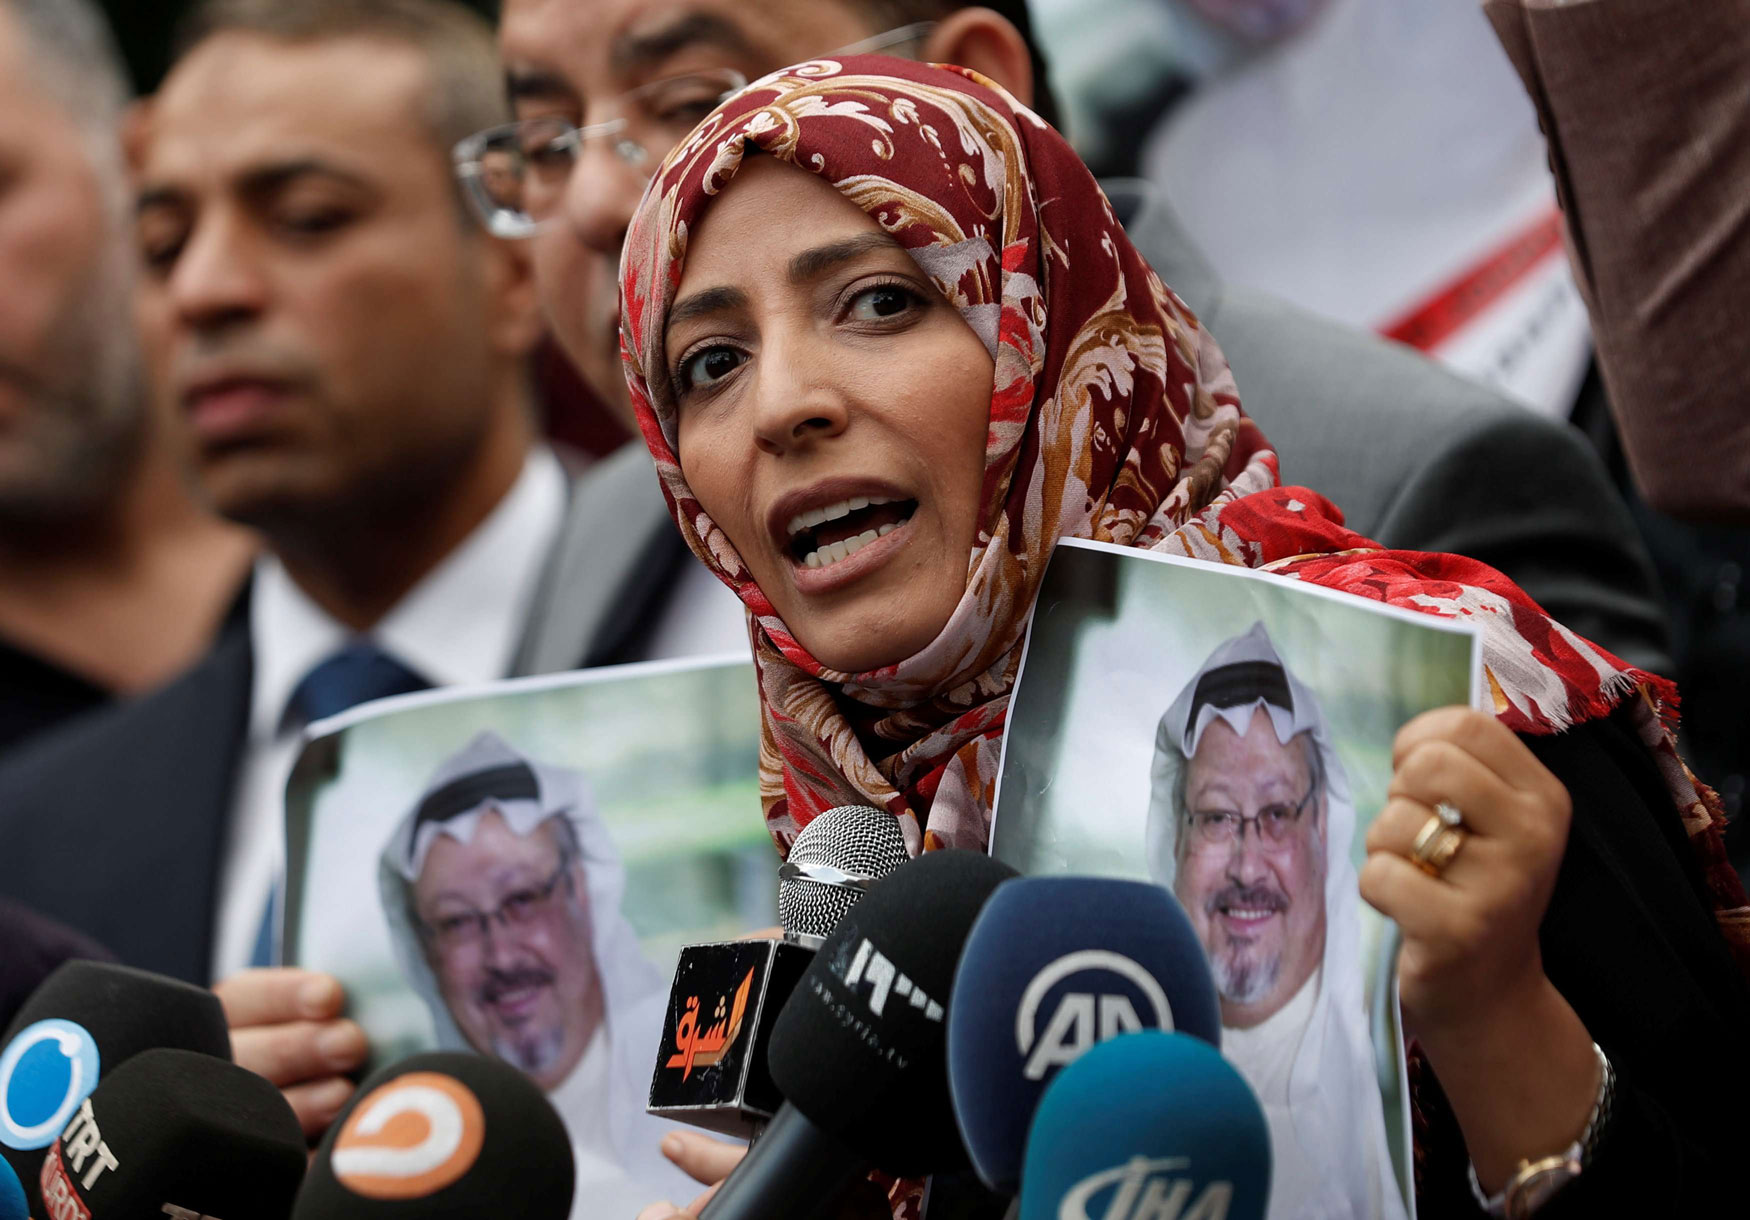 توكل كرمان شاركت بقوة حضورا ودعاية في الحملة التركية الاخوانية لتشويه السعودية في قضية مقتل خاشقجي